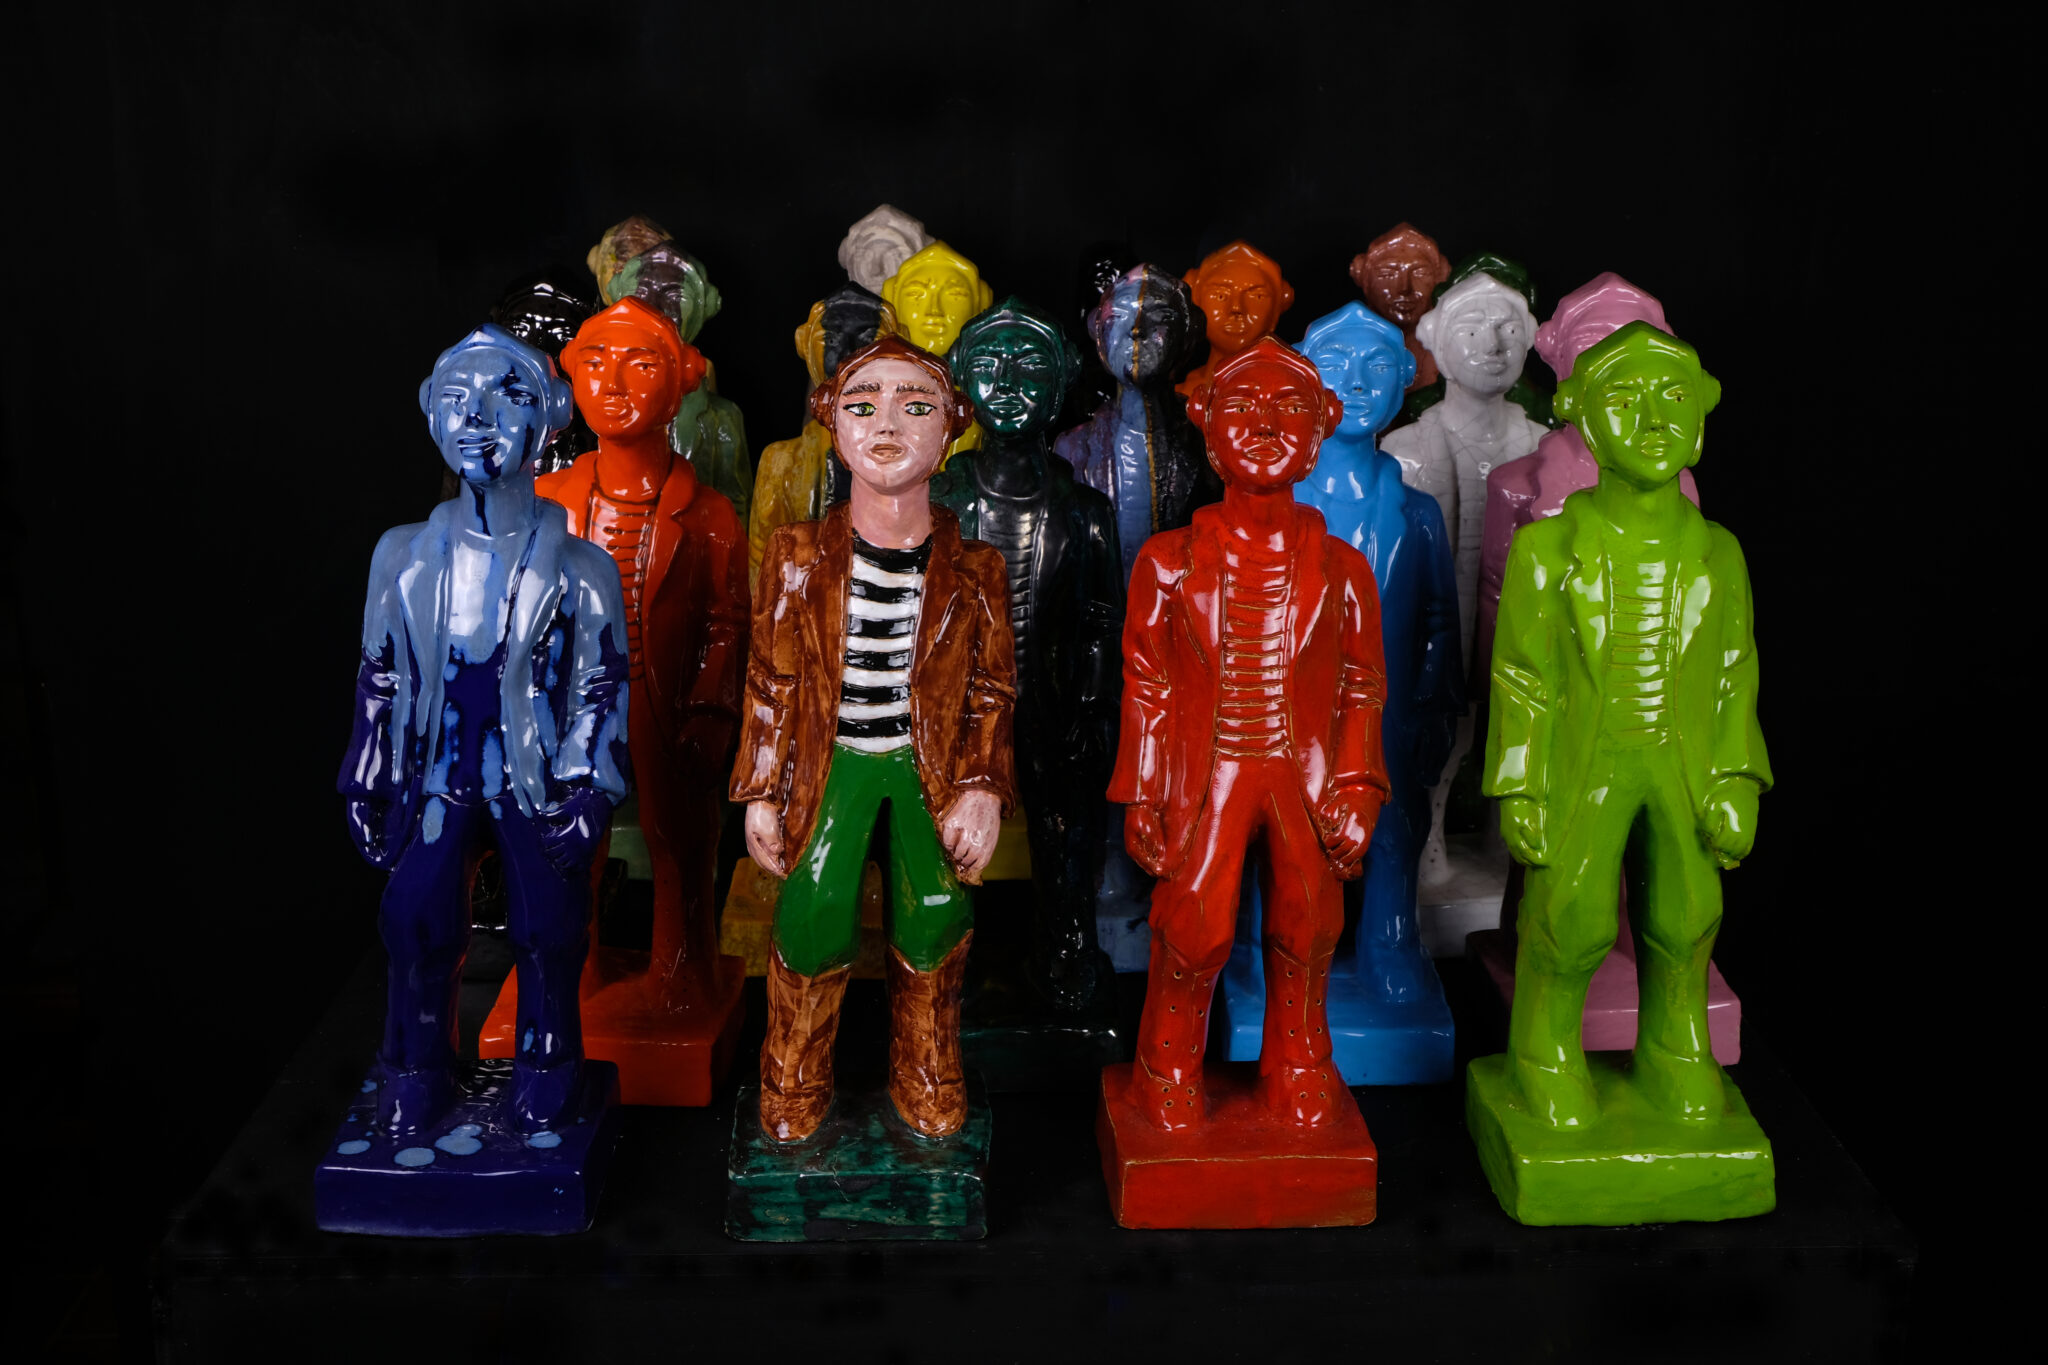 Viele hintereinander stehende Keramikfiguren, die einen Piloten darstellen mit verschiedenfarbigen, knallbunten Glasuren